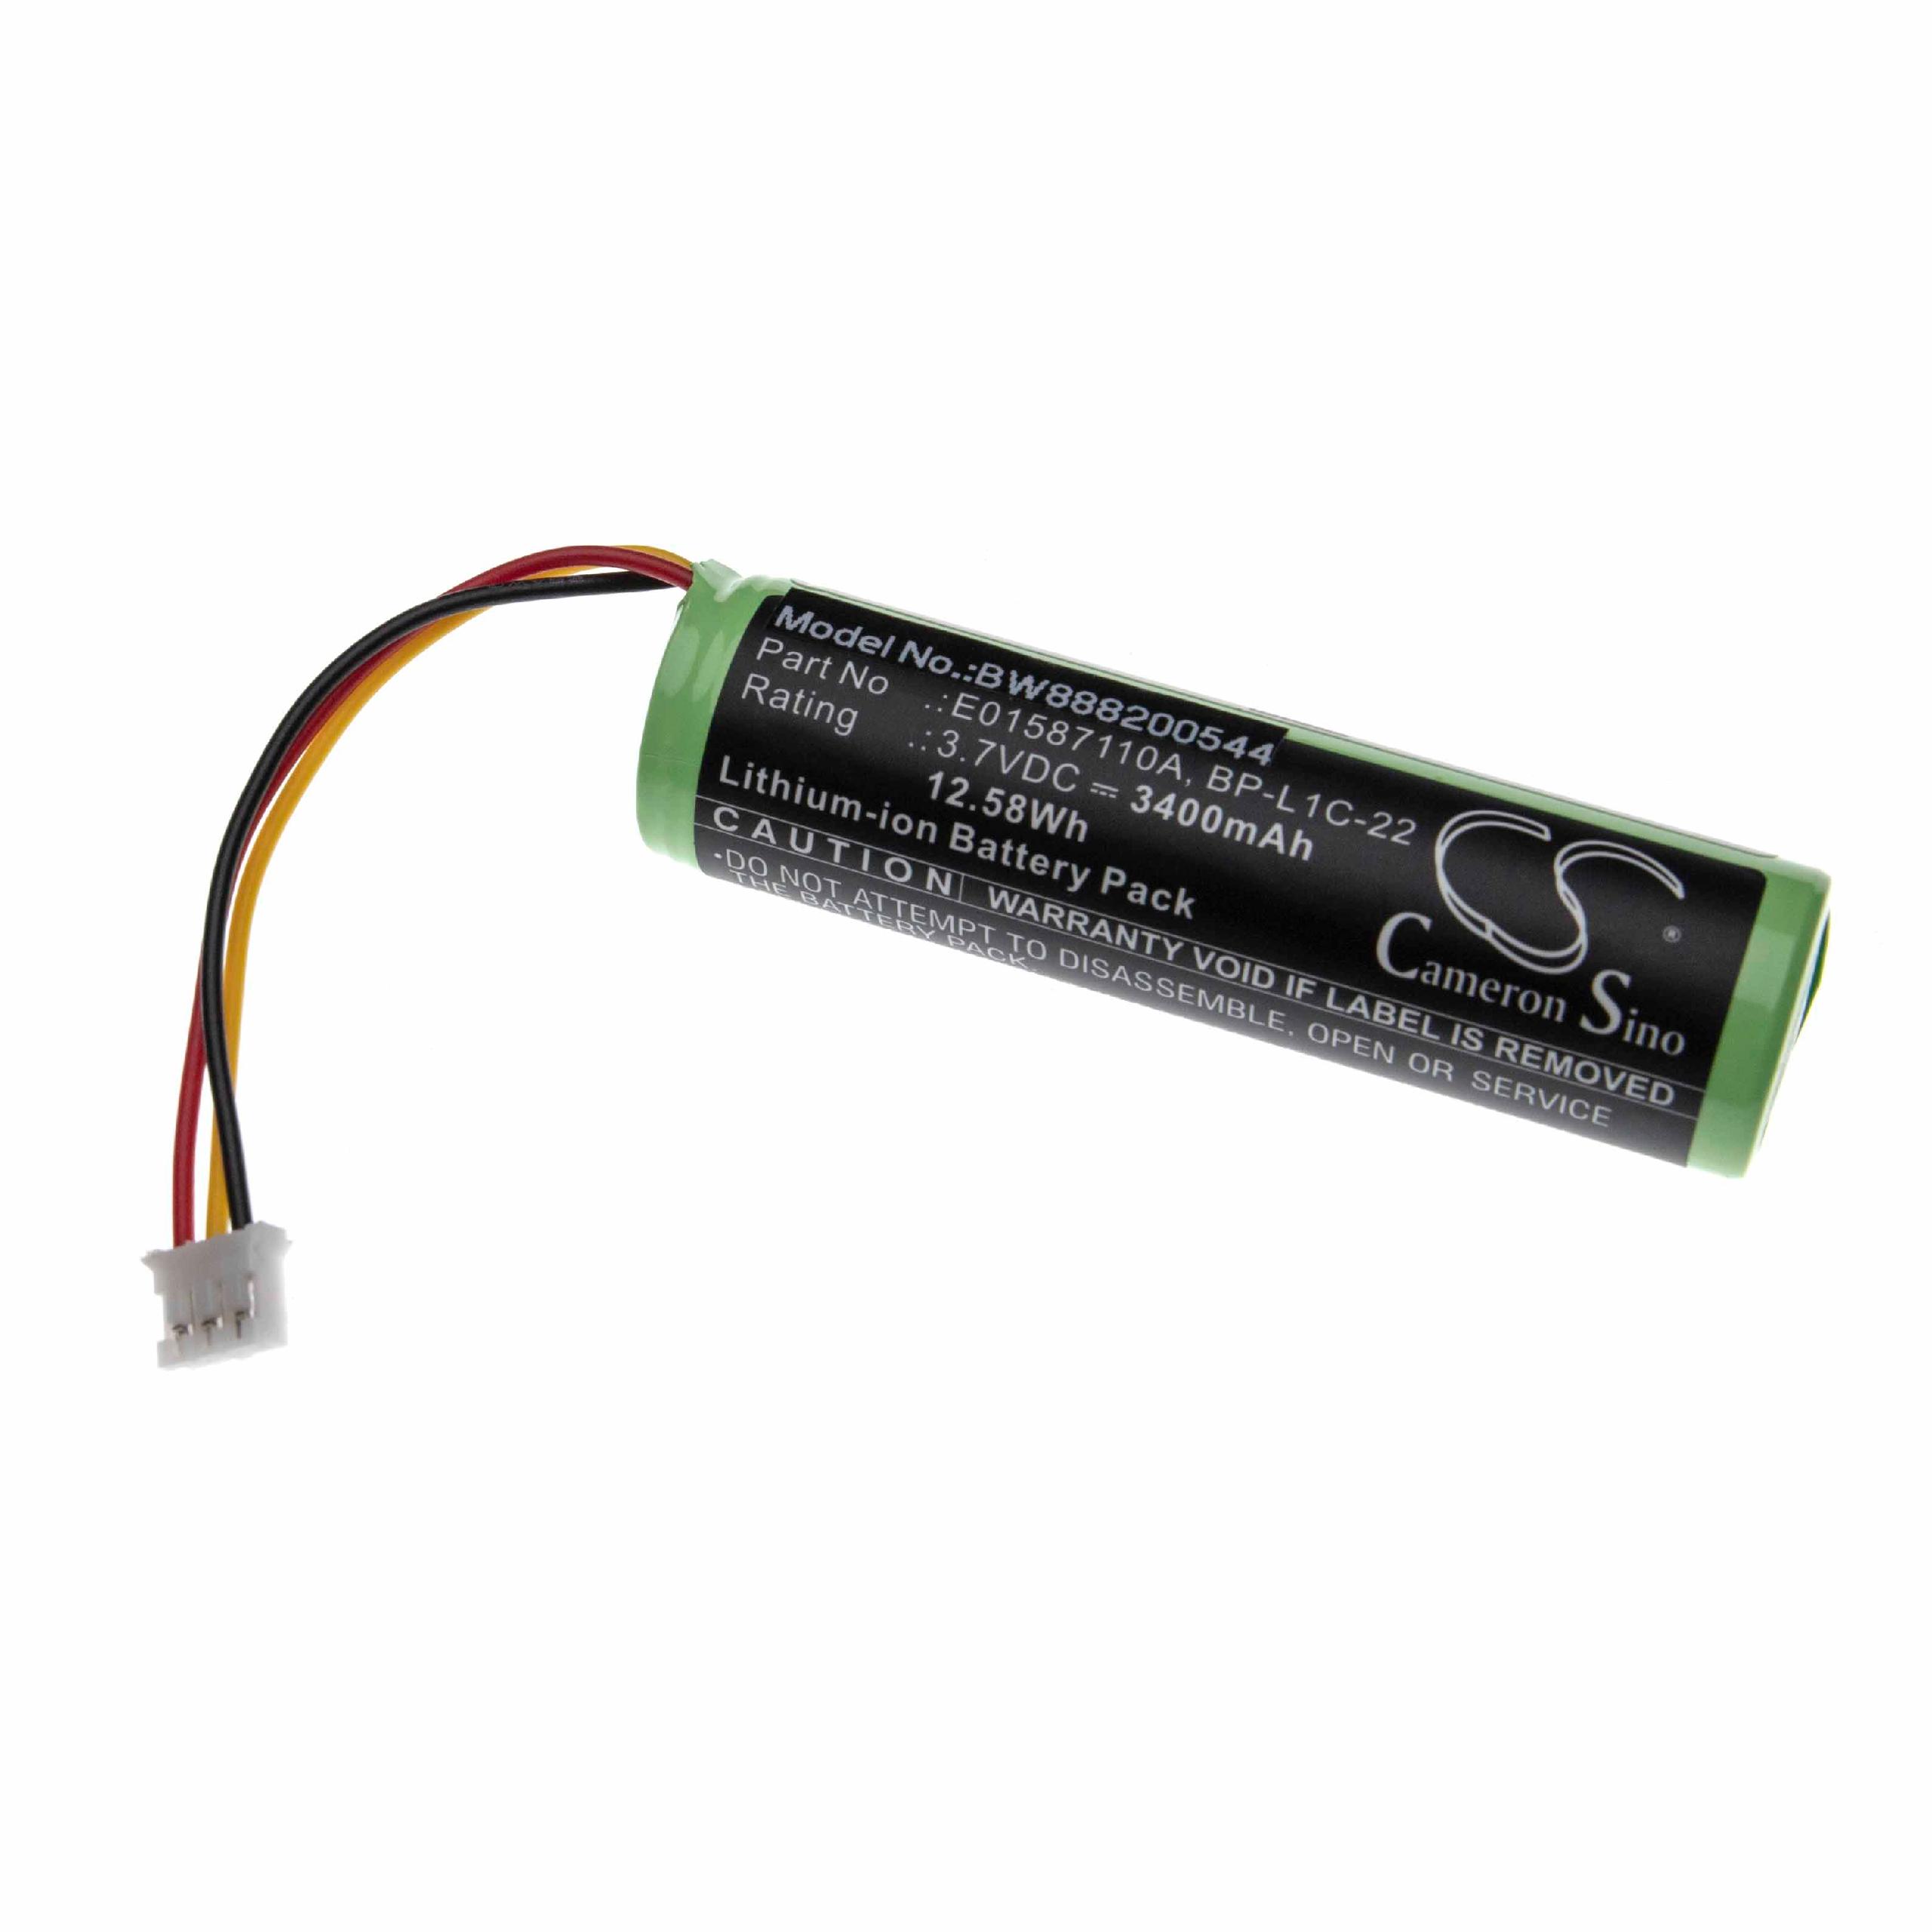 Batterie remplace Tascam E01587110A, BP-L1C-22 pour lecteur MP3 - 3400mAh 3,7V Li-ion